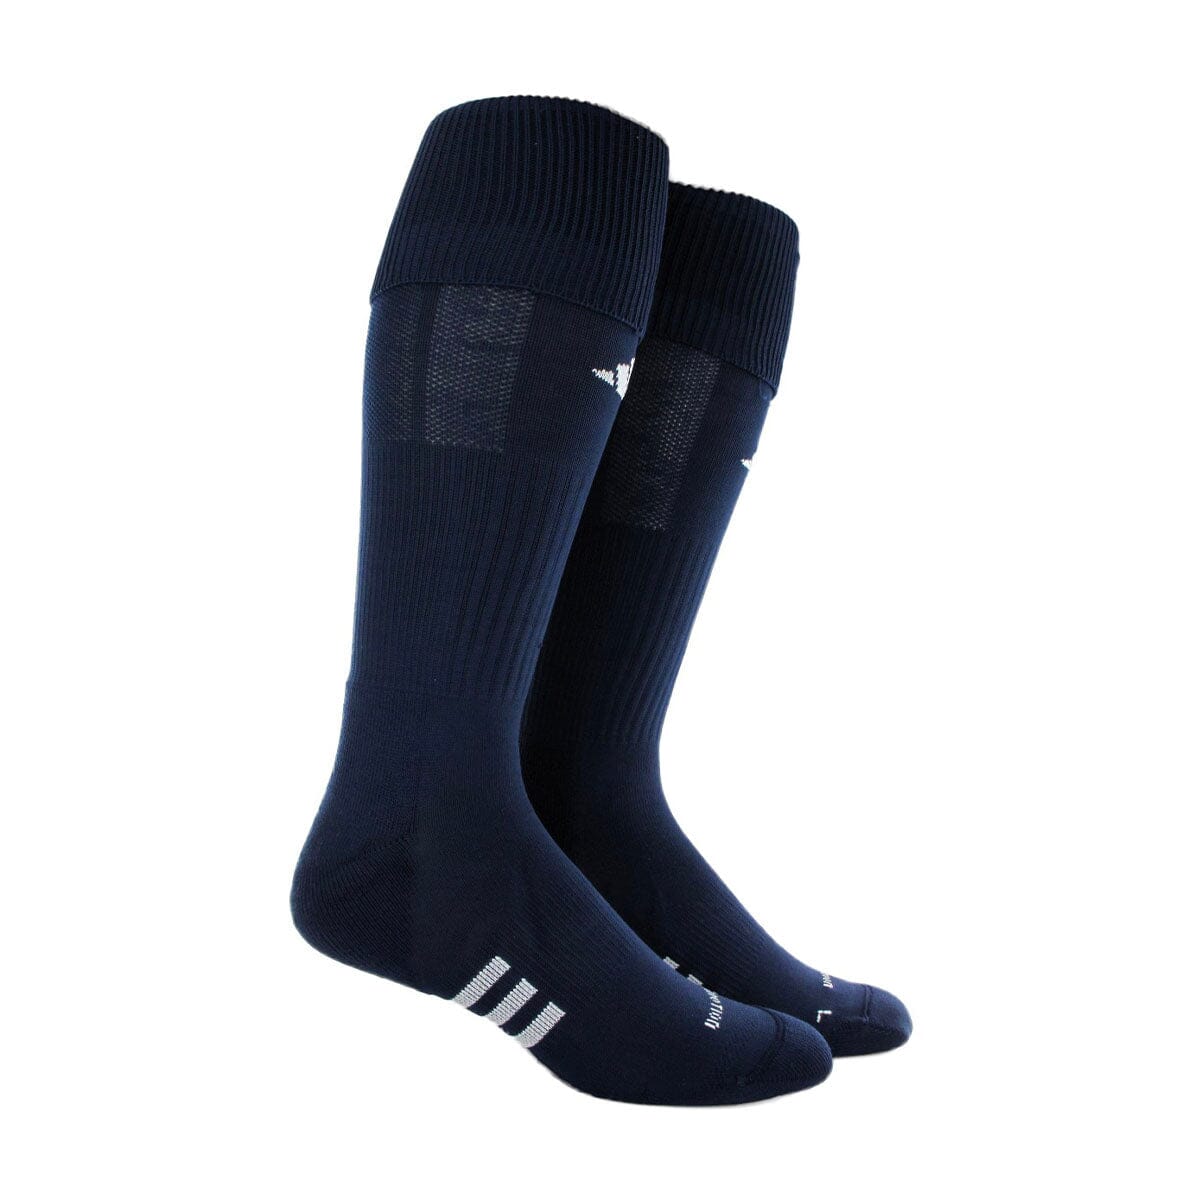 Adidas Formotion NCAA Elite Sock (Navy) | GoalKickSoccer - Goal Kick Soccer